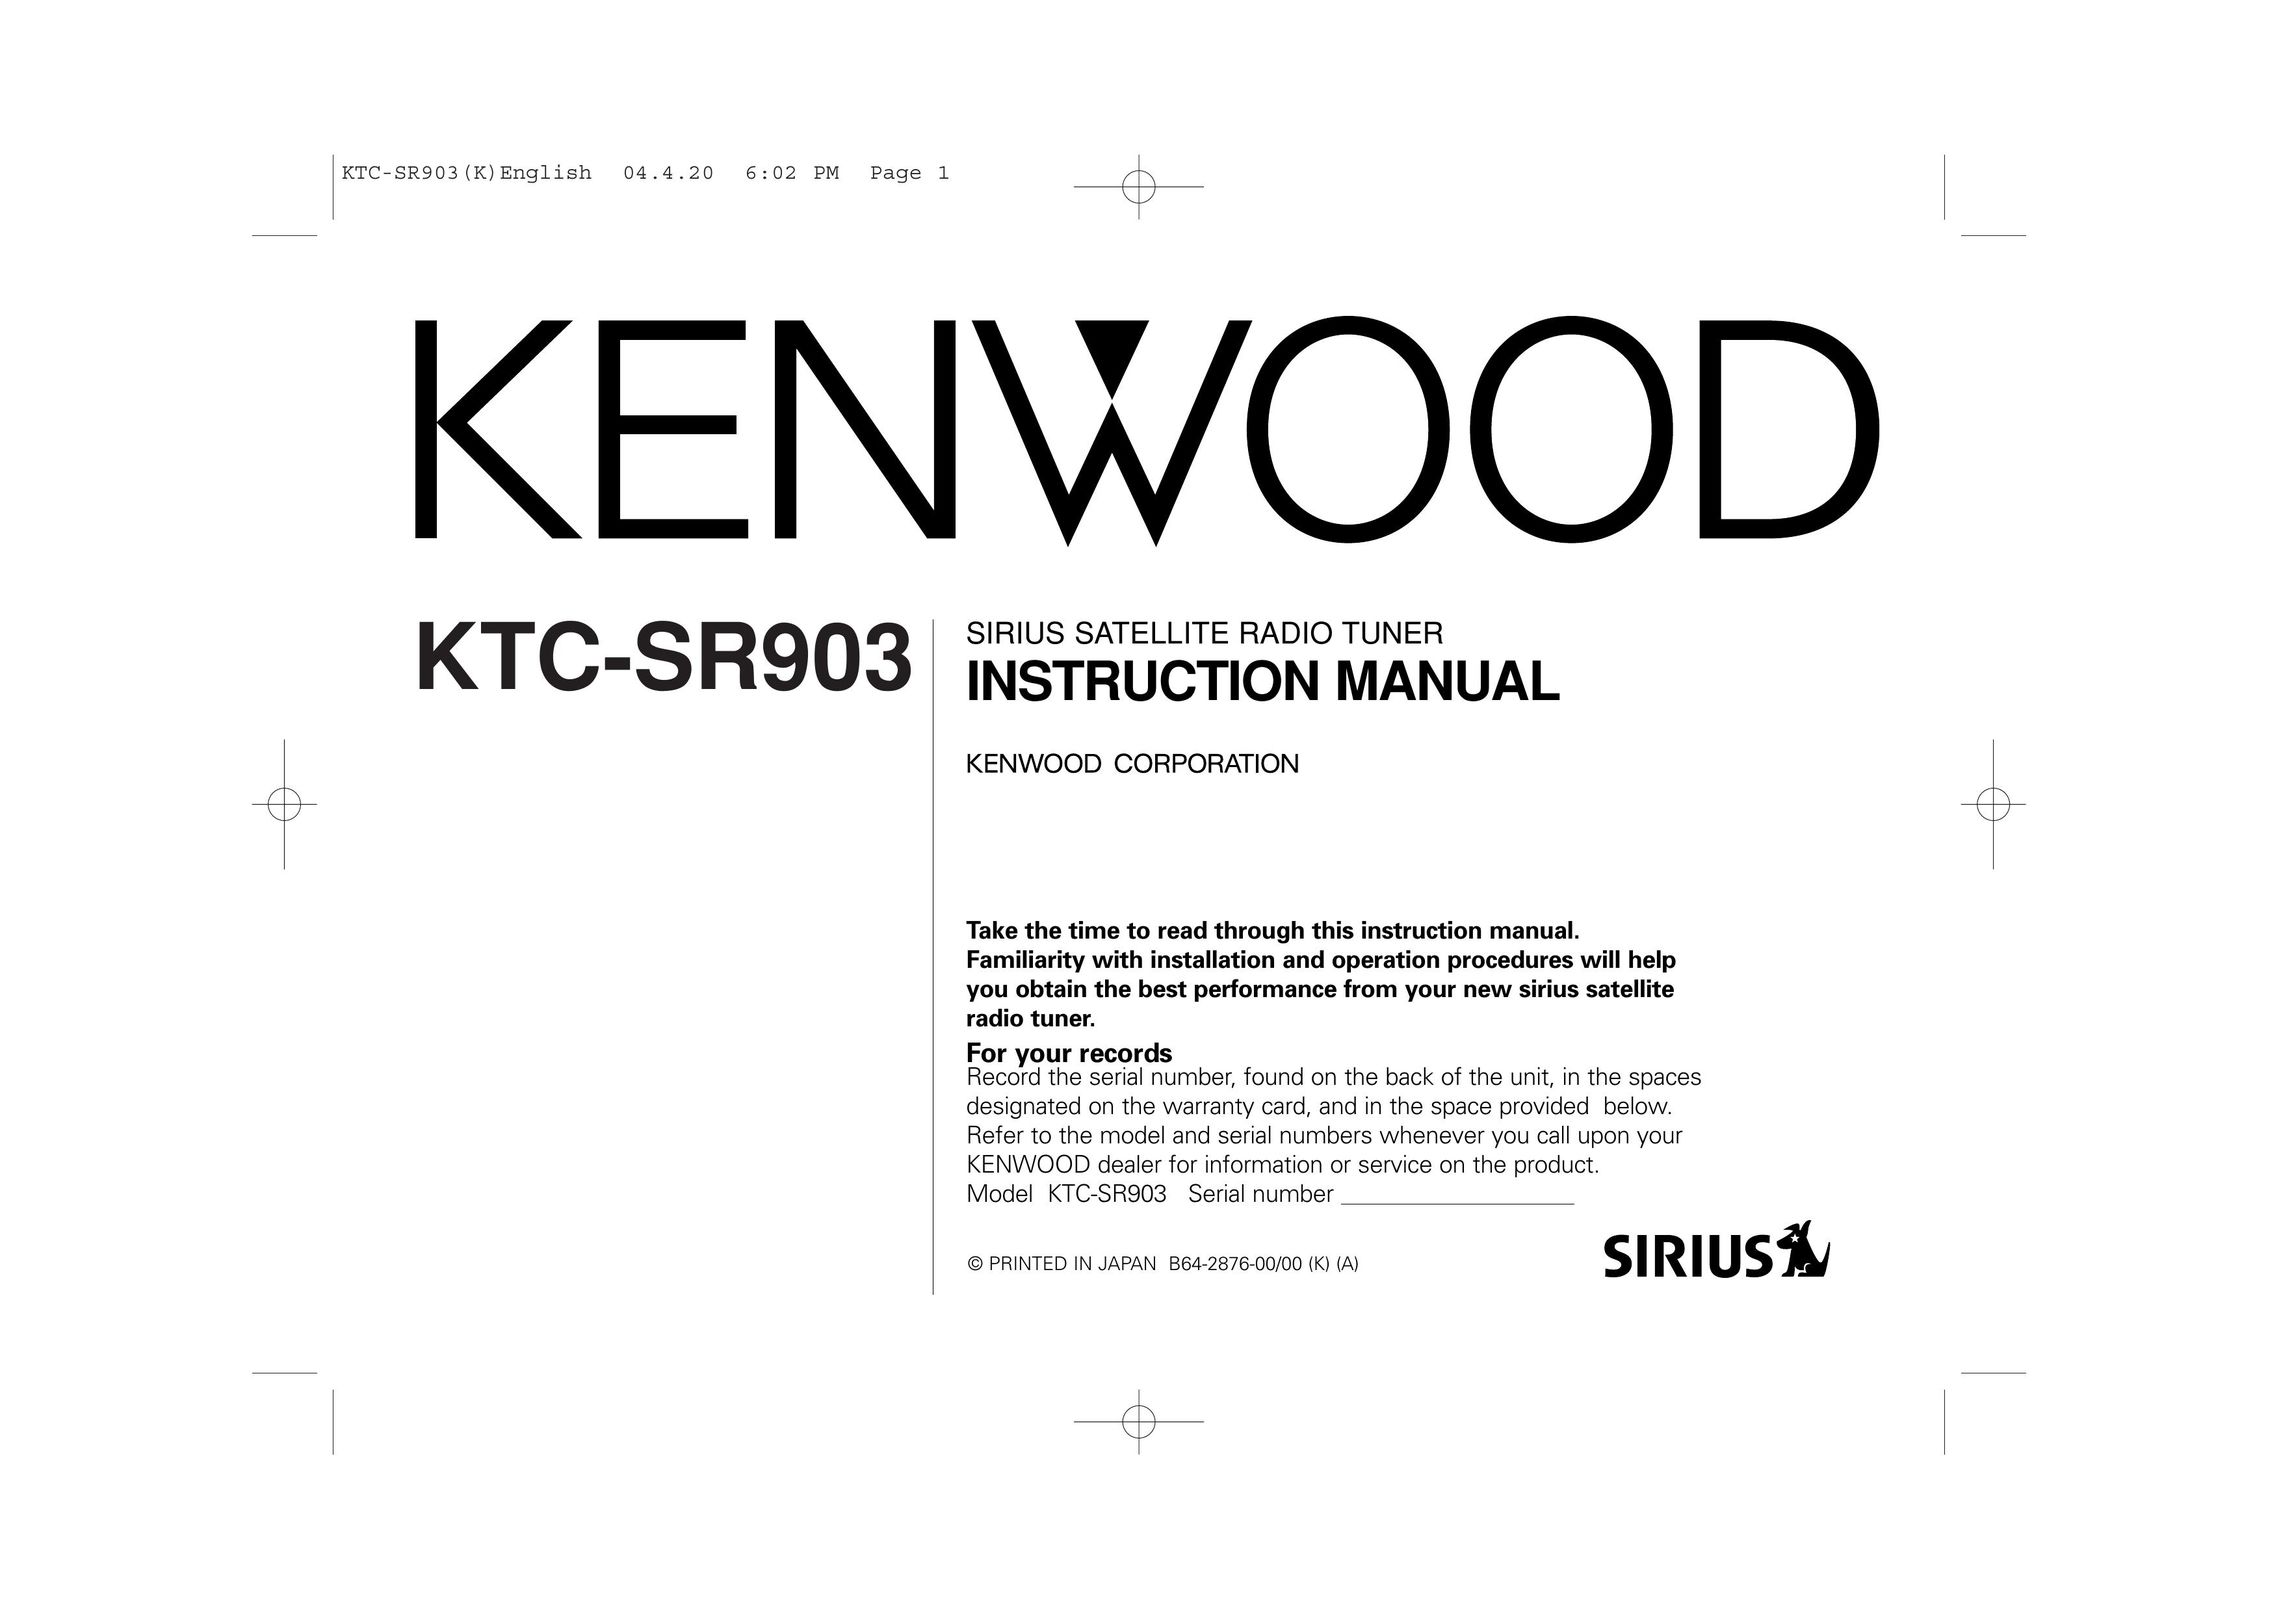 Kenwood KTC-SR903 Car Satellite Radio System User Manual